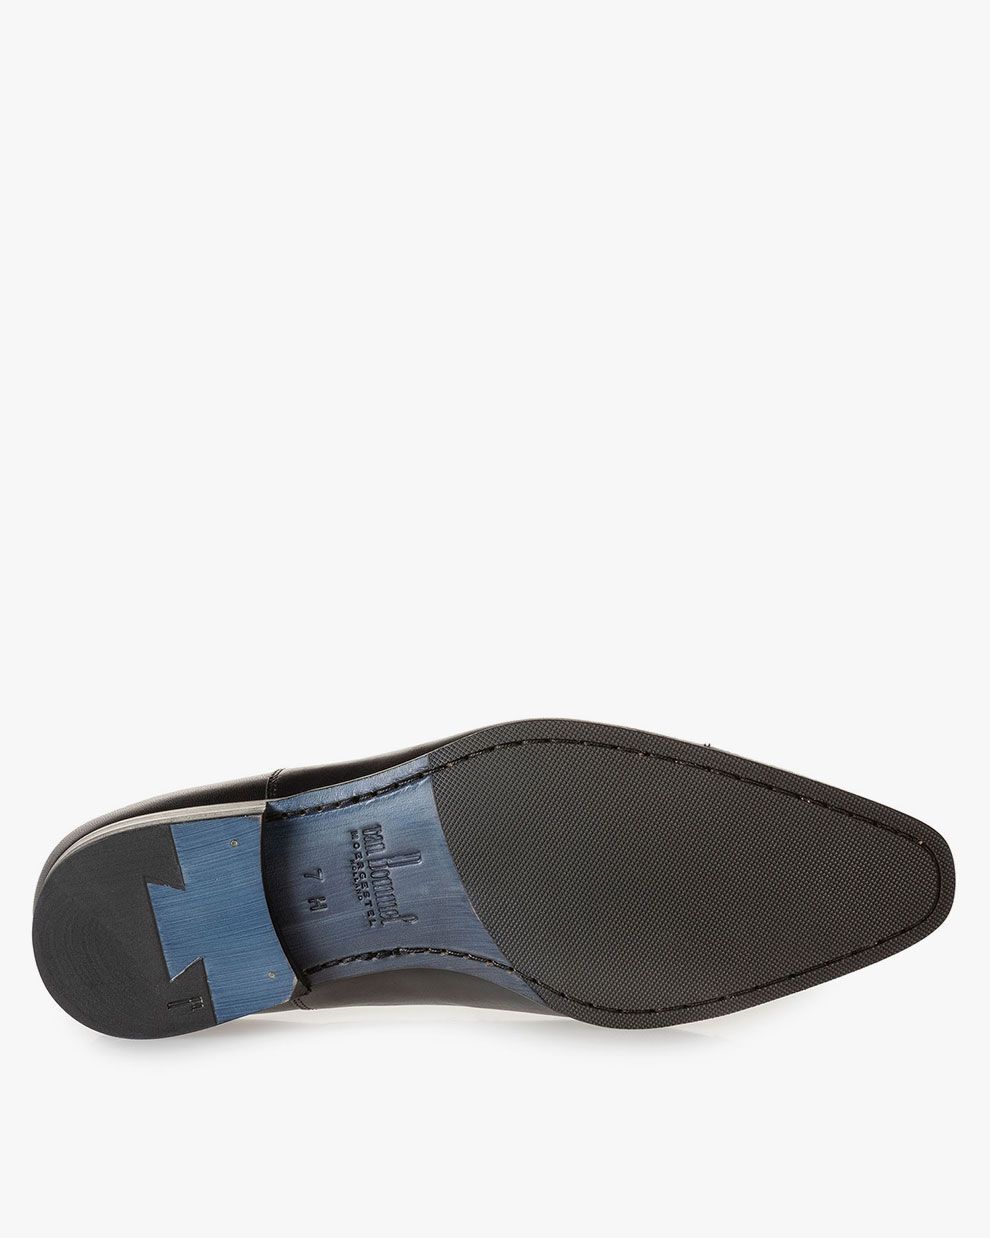 Lace shoe calf leather black SBM-30088-10-01 | Floris van Bommel®